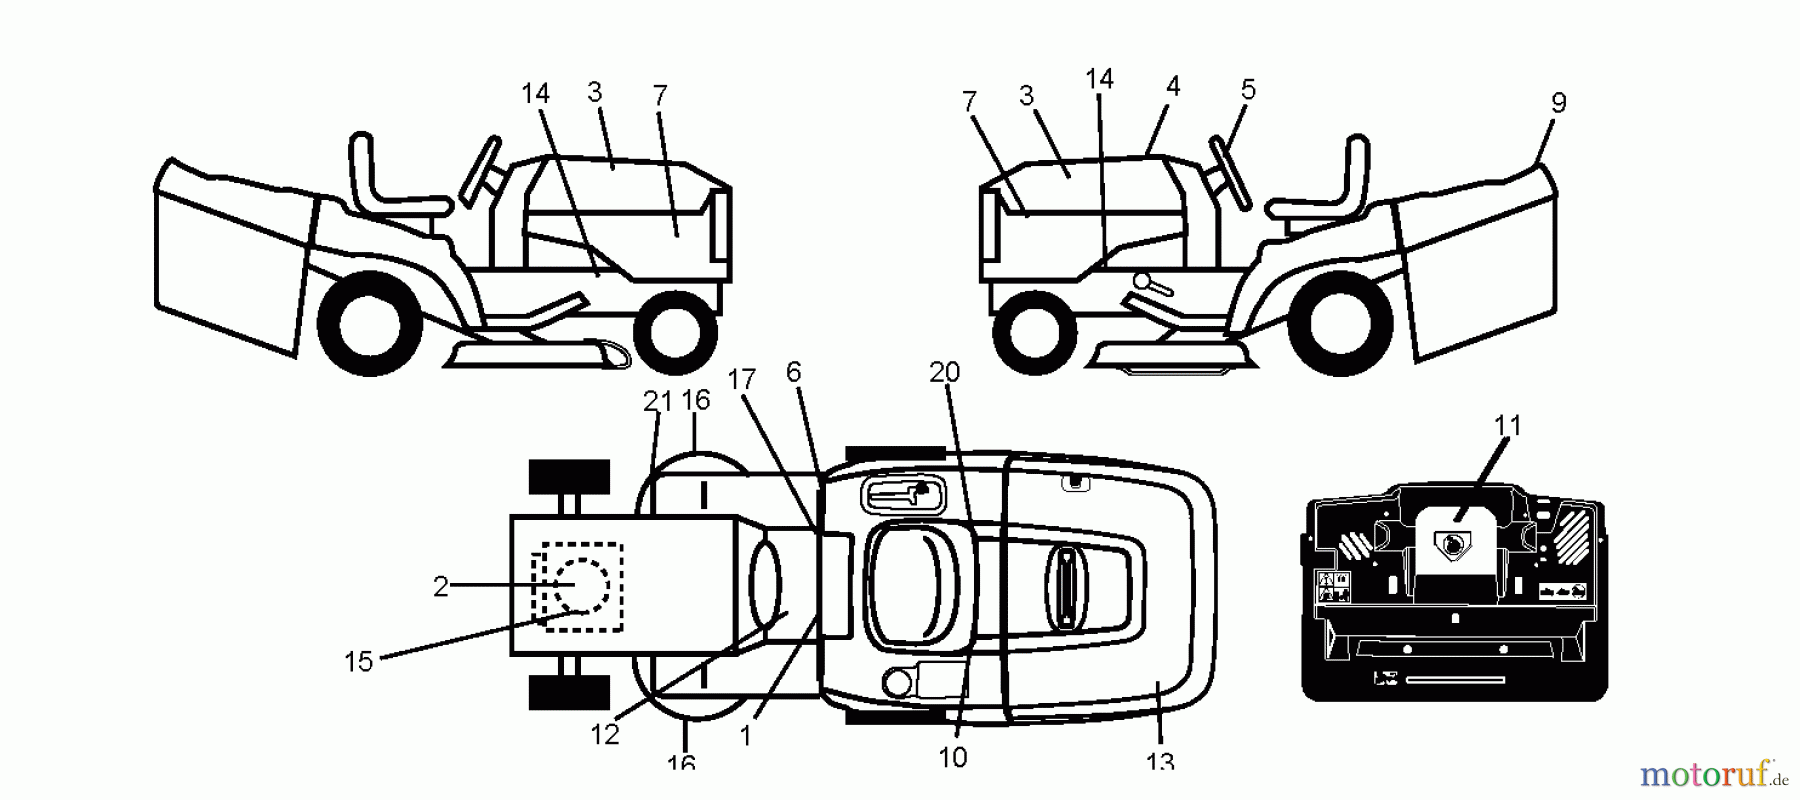  Jonsered Rasen  und Garten Traktoren LT2217 CMA (96061019603) - Jonsered Lawn & Garden Tractor (2008-01) DECALS